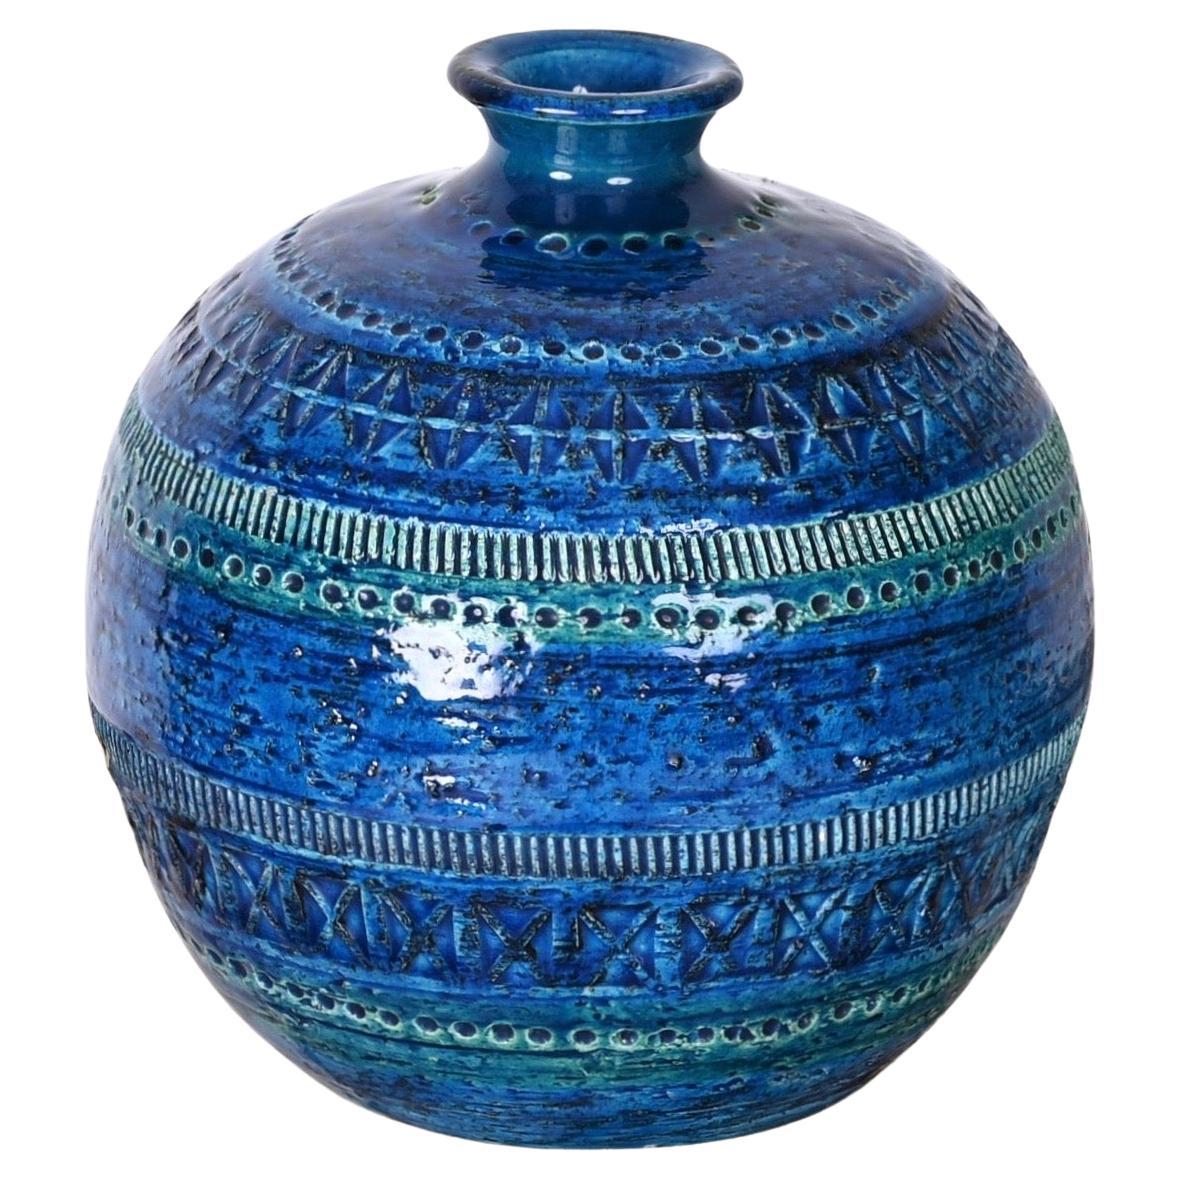 Aldo Londi Terracotta Ceramic Rimini Blue Vase for Bitossi, Italy, 1960s For Sale